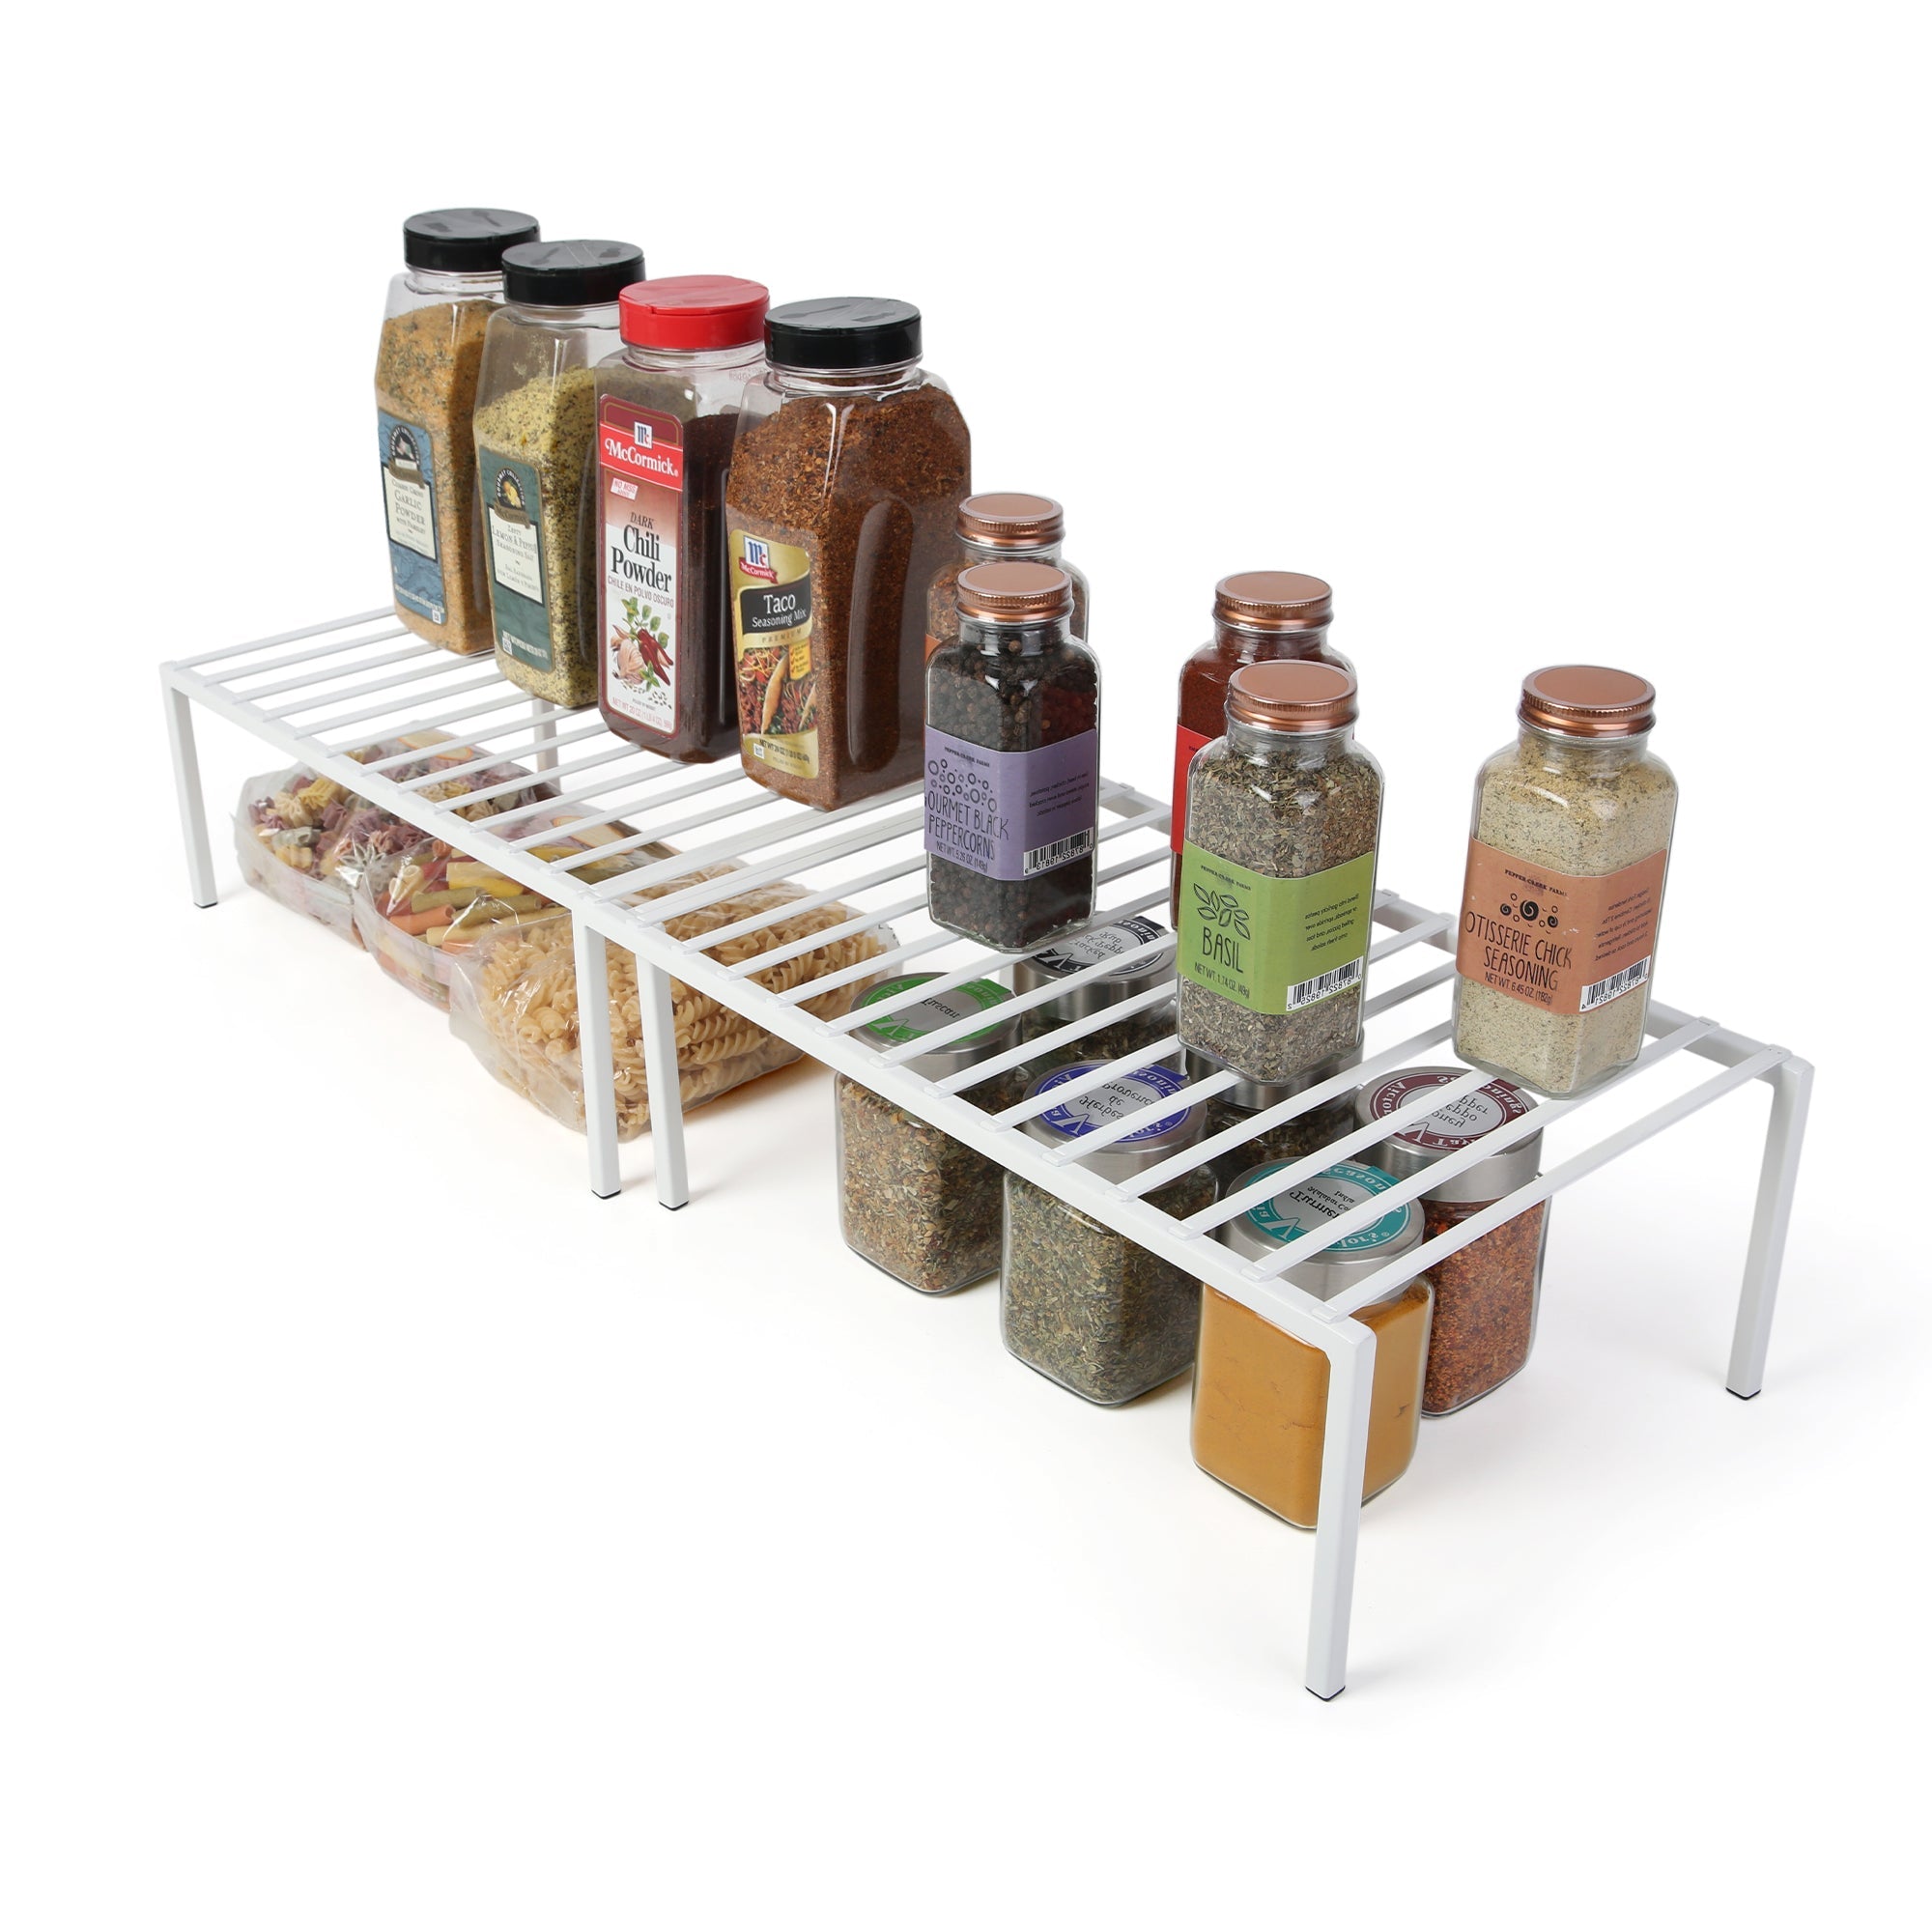 https://www.shopsmartdesign.com/cdn/shop/products/premium-expandable-cabinet-storage-rack-smart-design-kitchen-8423118-incrementing-number-450224.jpg?v=1679338087